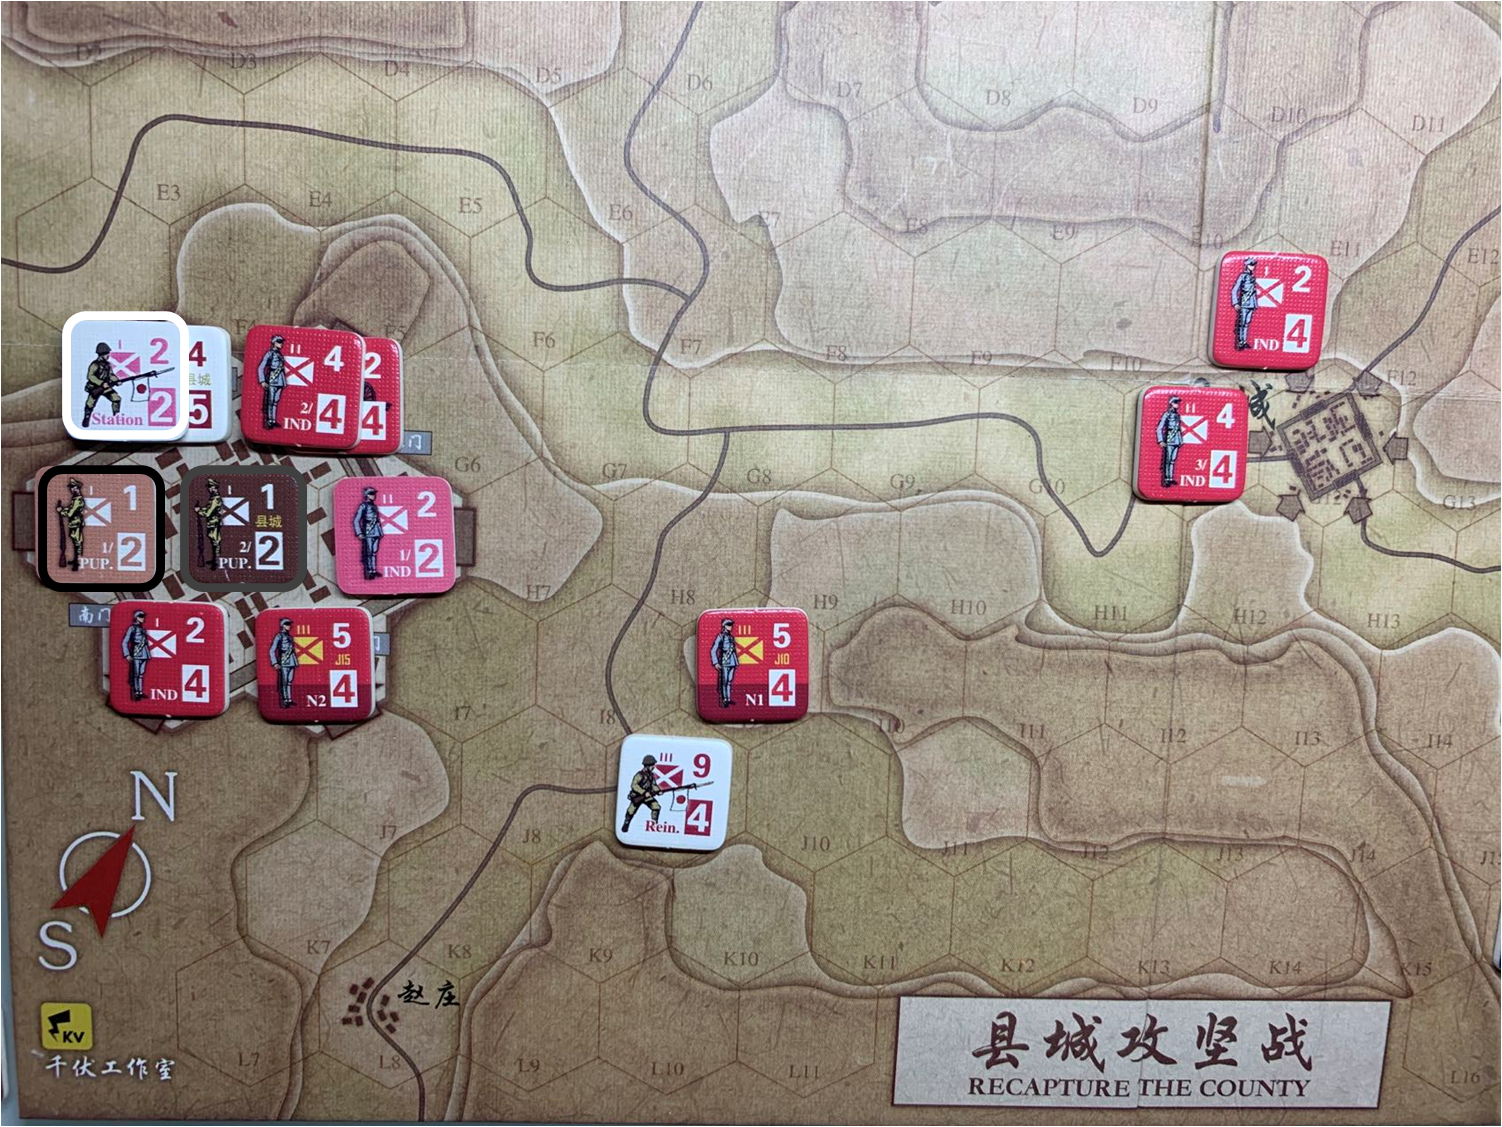 第二回合县城内日军Station和伪军1/PUP.、伪军2/PUP.守城部队对于移动命令5的执行结果